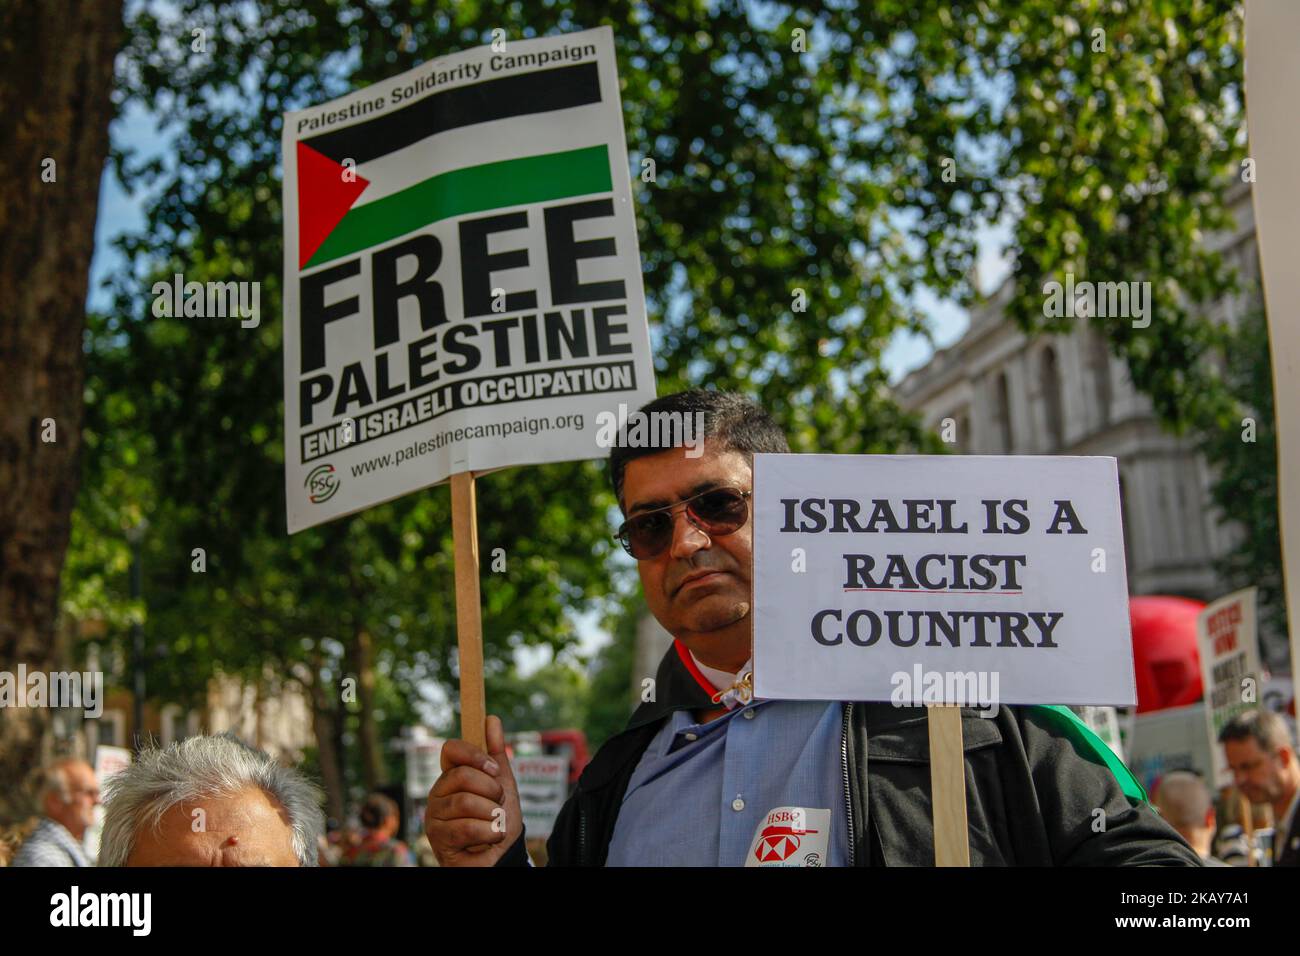 Pro-Palästinensischer Protestler. Palästinenser und diejenigen, die Palästina unterstützen, protestierten am 5. Juni 2018 in London, Großbritannien, gegen die jüngsten Morde im Gazastreifen. (Foto von Alex Cavendish/NurPhoto) Stockfoto